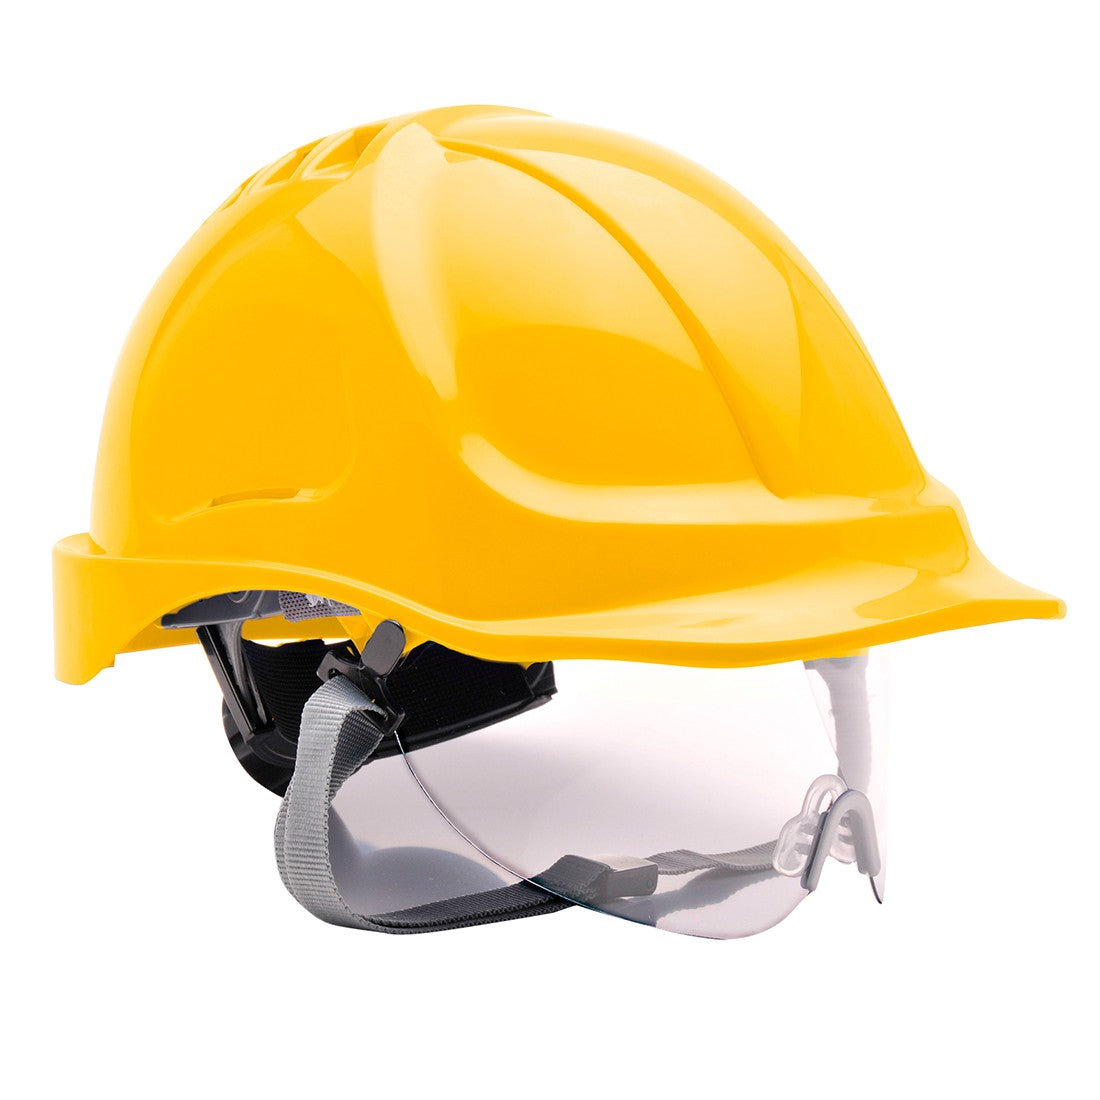 PW55 Endurance Visor Helmet